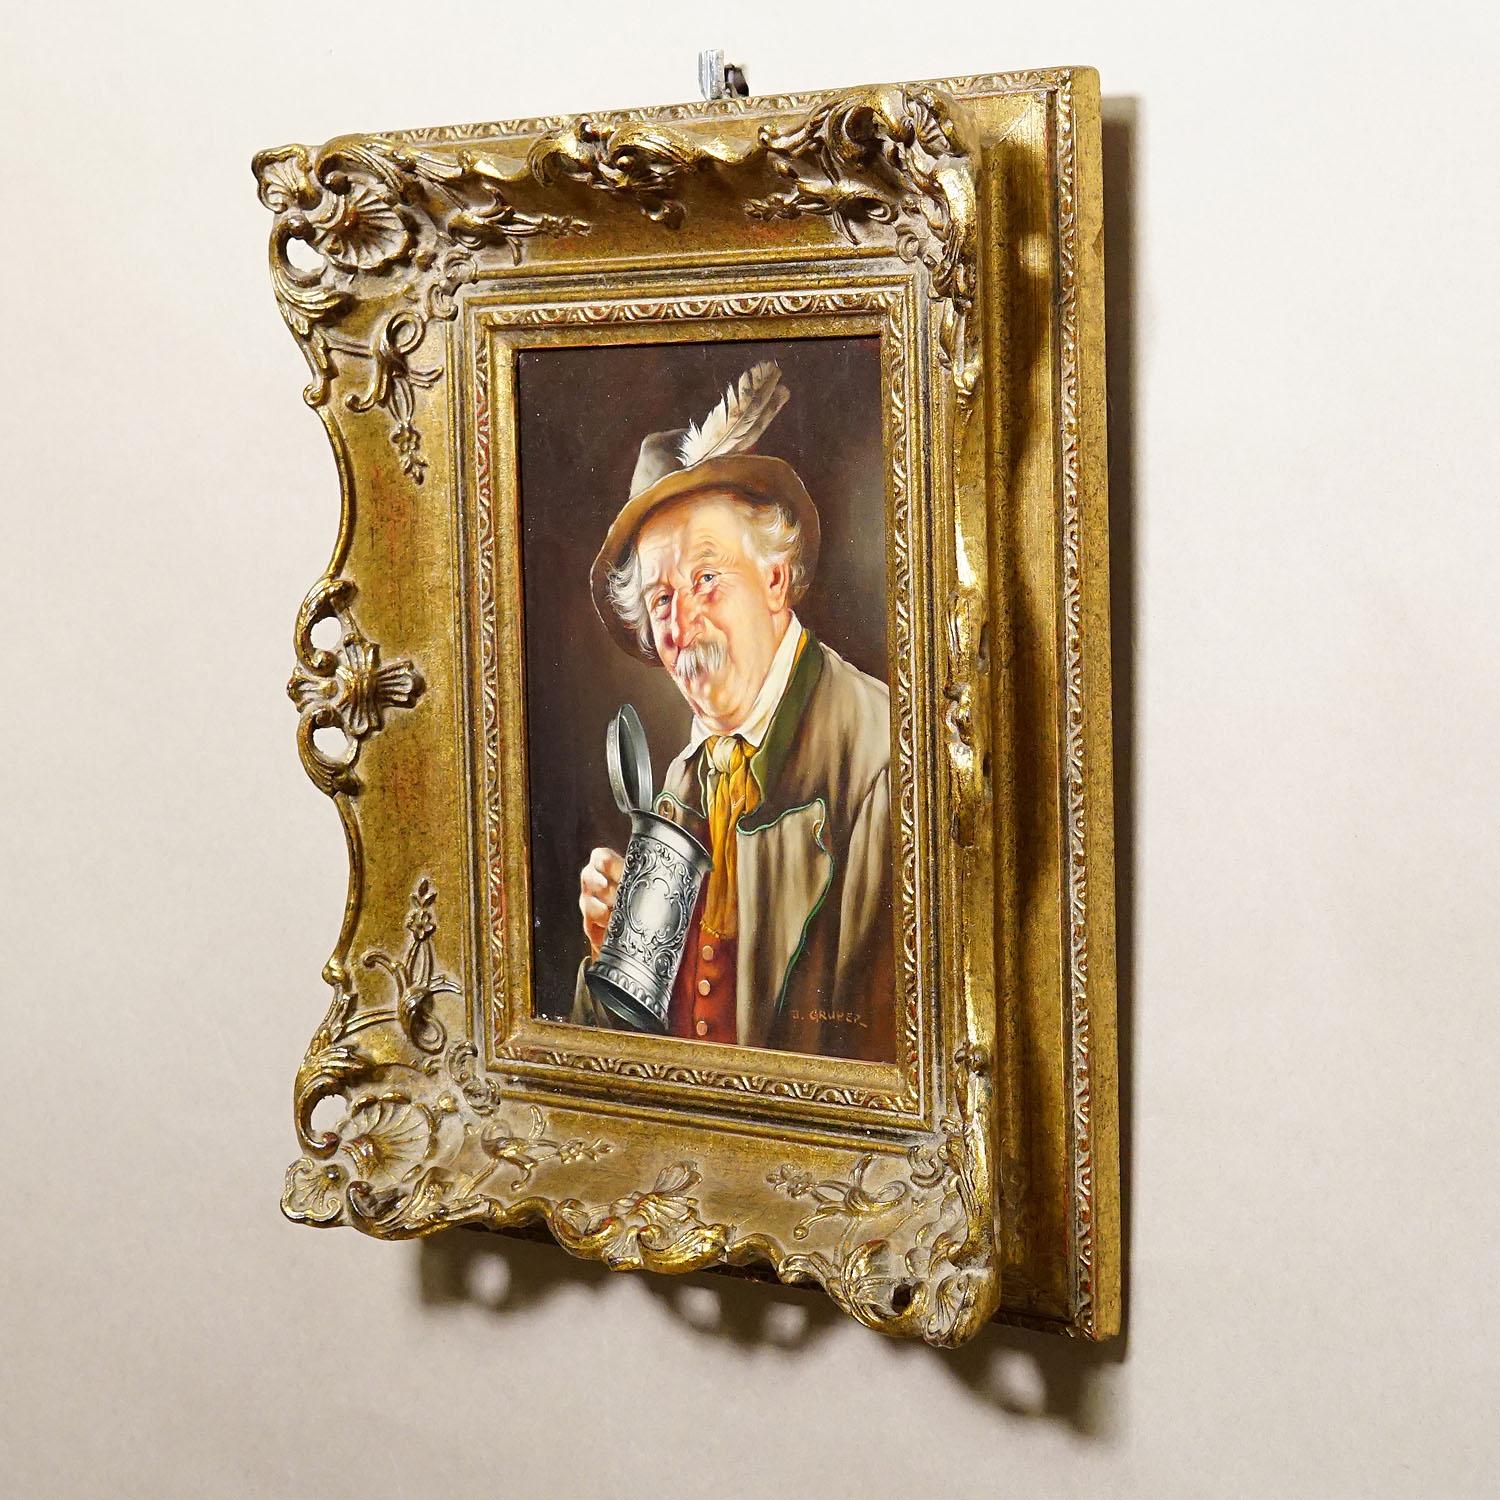 Folk Art J. Gruber - Portrait of a Bavarian Folksy Man with Beer Mug, Oil on Wood For Sale